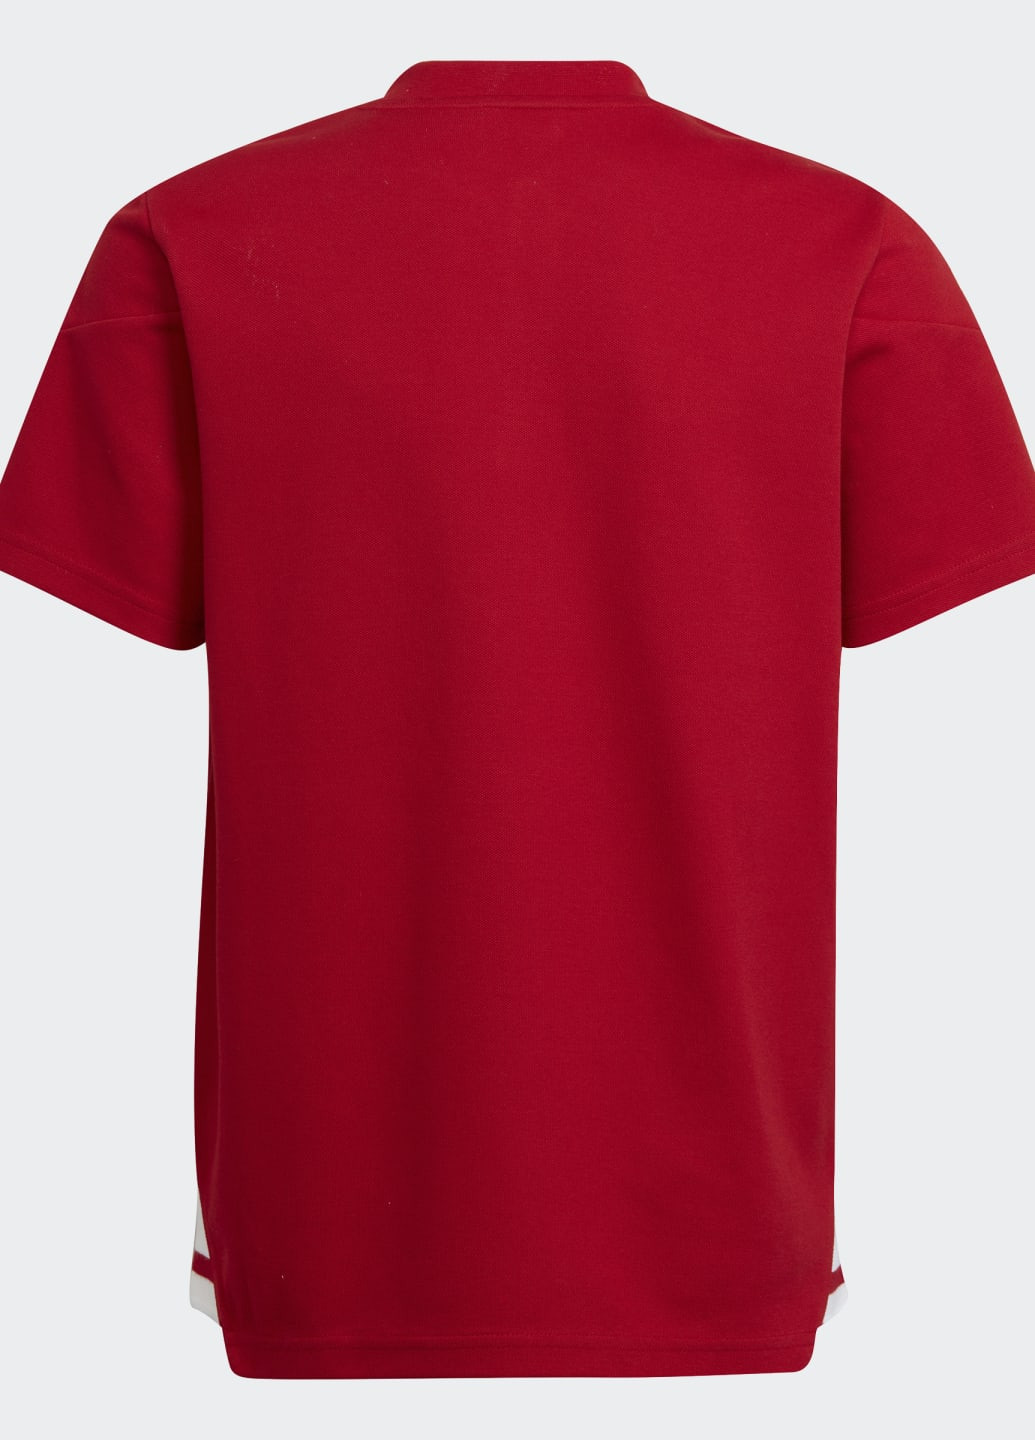 Красная демисезонная футболка поло condivo 22 adidas